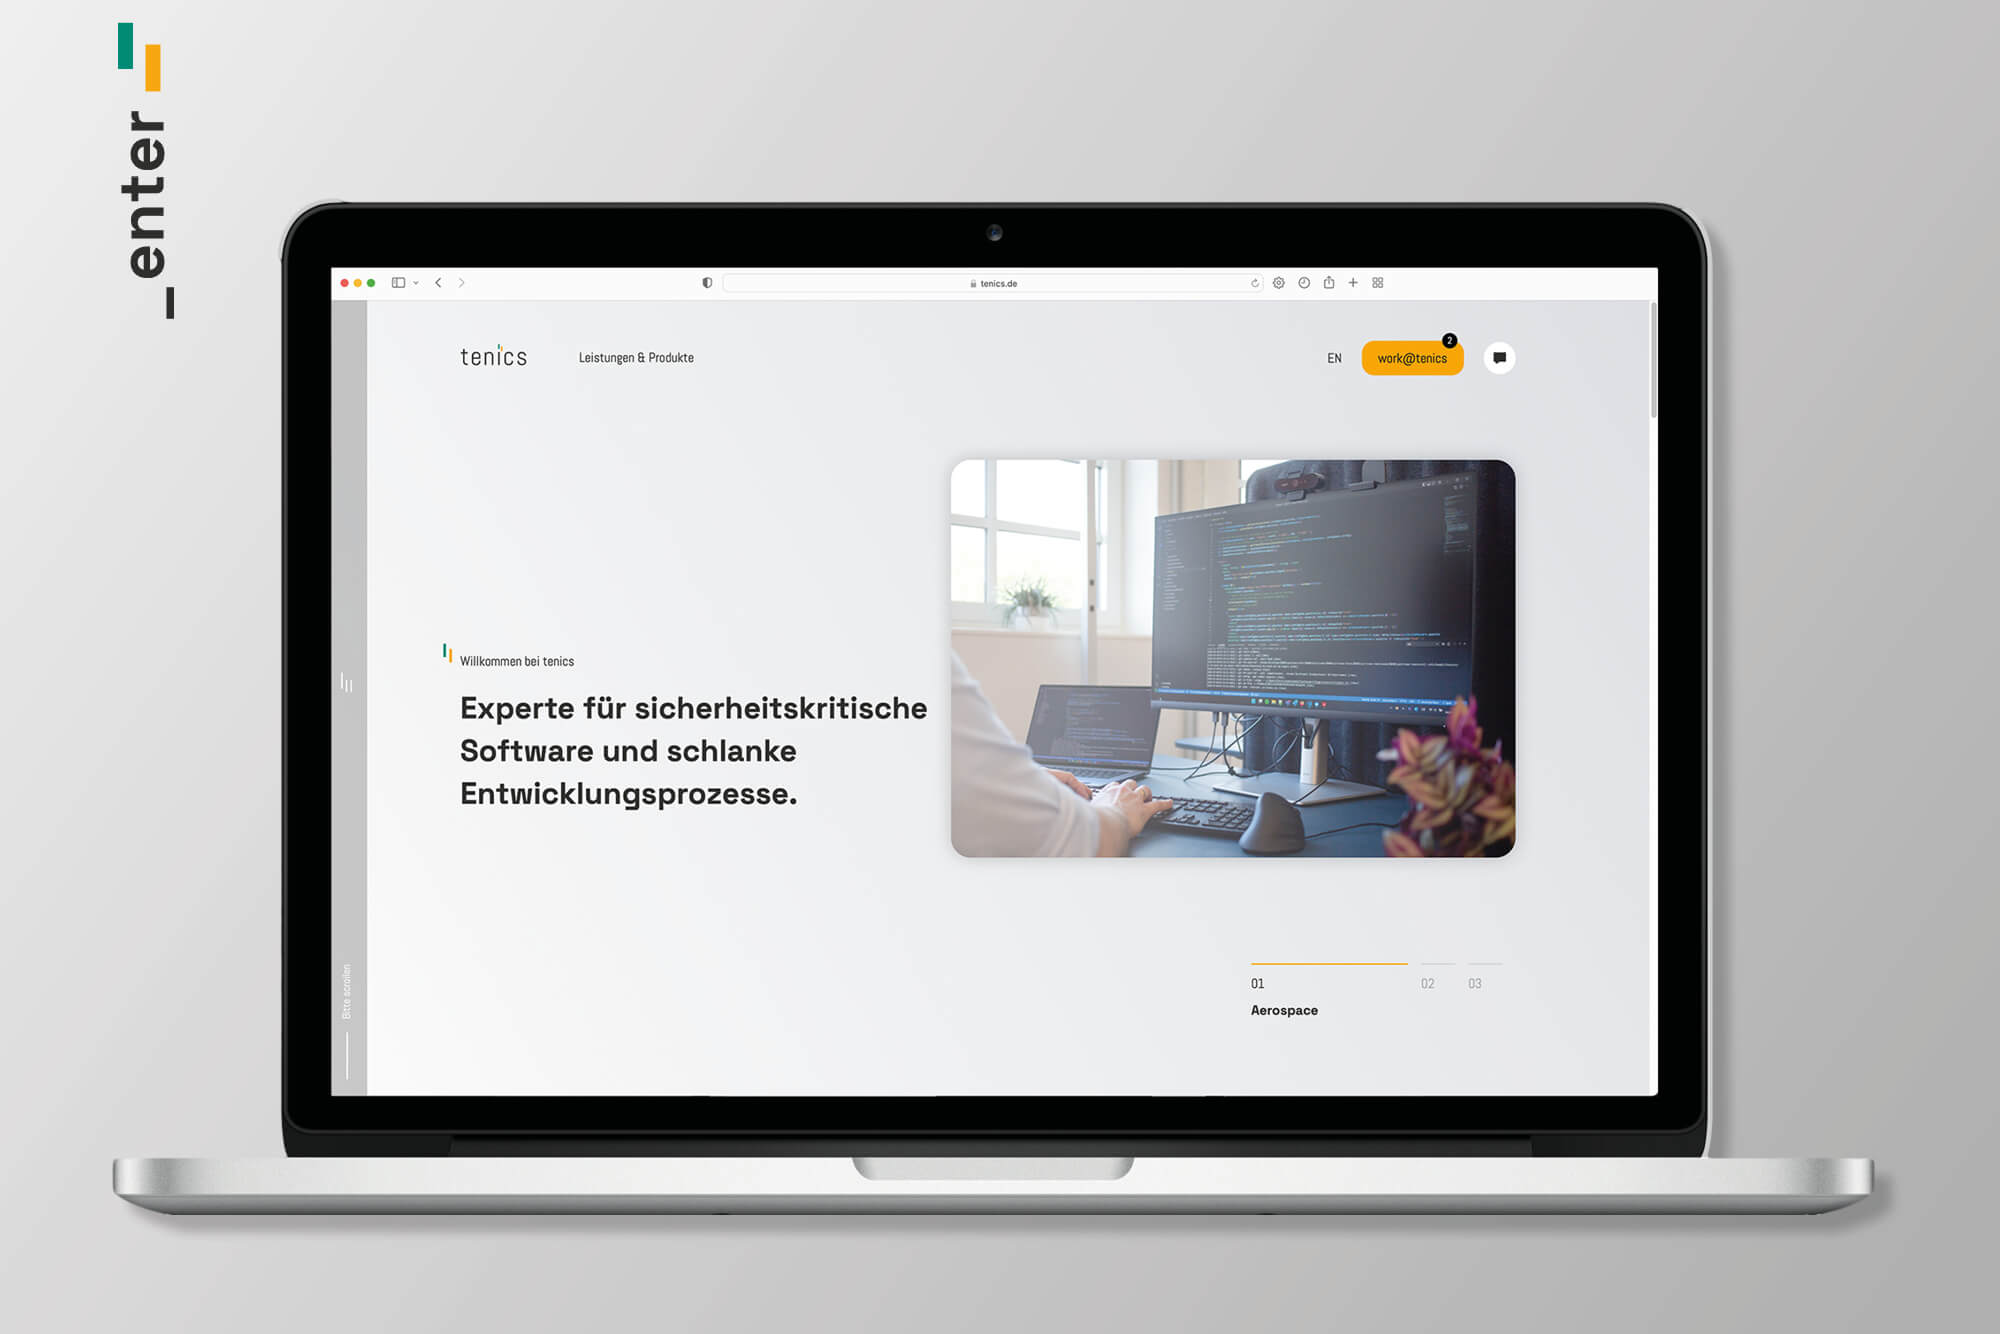 BFGA Werbeagentur Bremen | Referenz tenics software Webdesign Engineering Screen Startseite Homepage